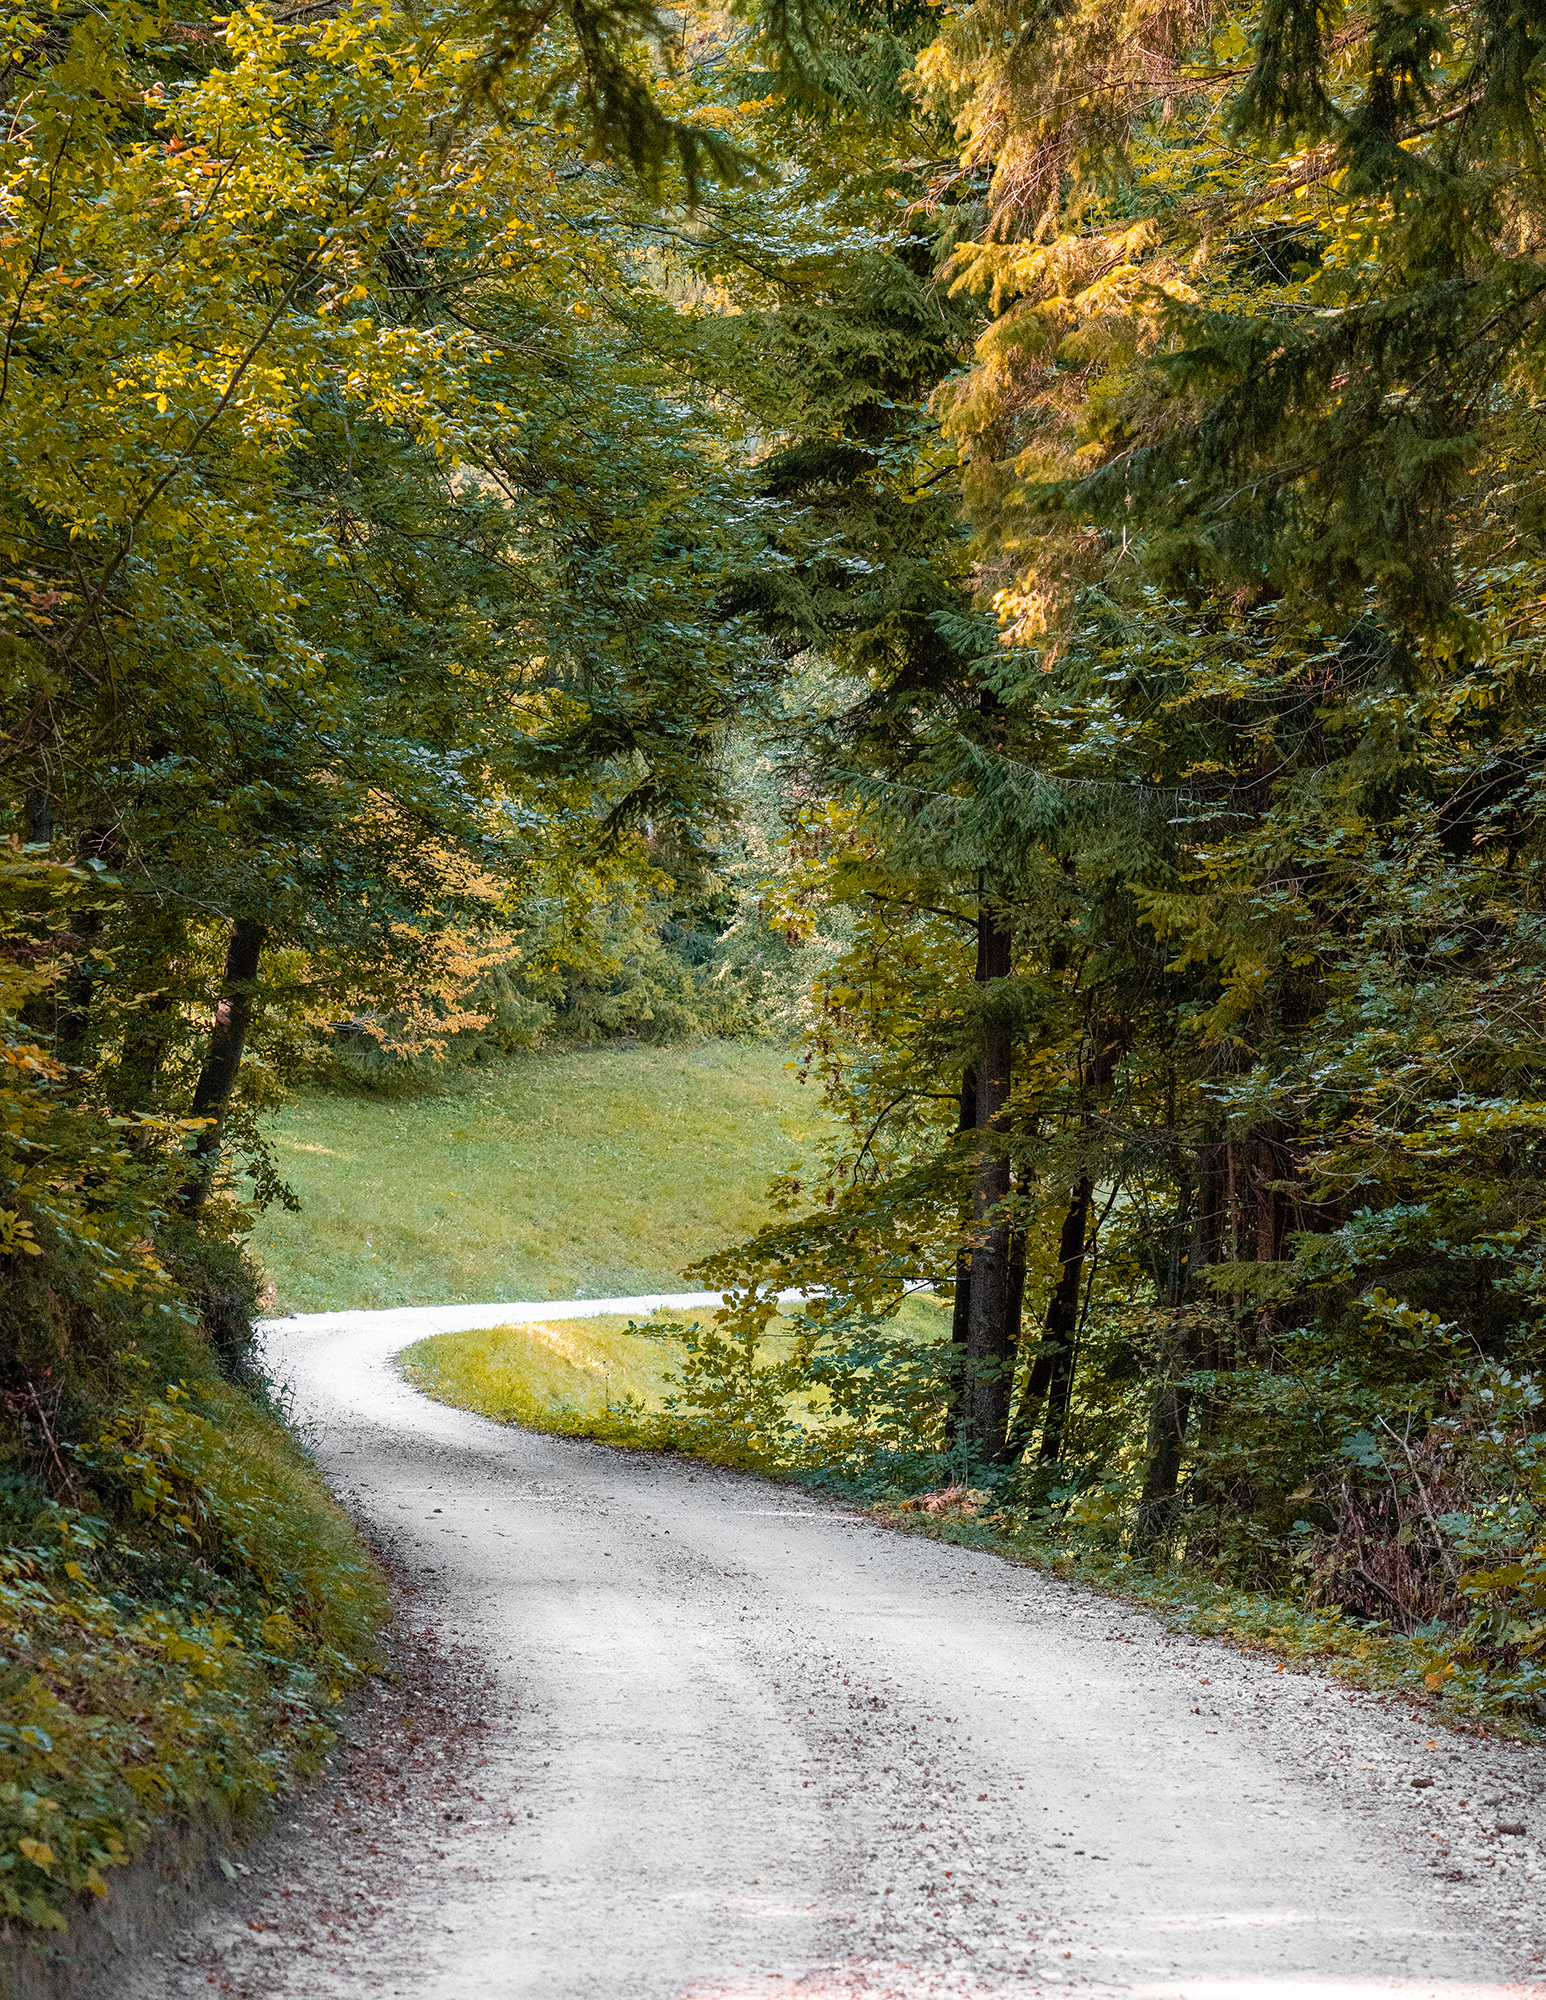 September 29, 2018 - Zasavska Sveta gora: Photo from a hike from Vace to Zasavska Sveta gora in Slovenia - a forest path leading from Vace to Zasavska Sveta gora.